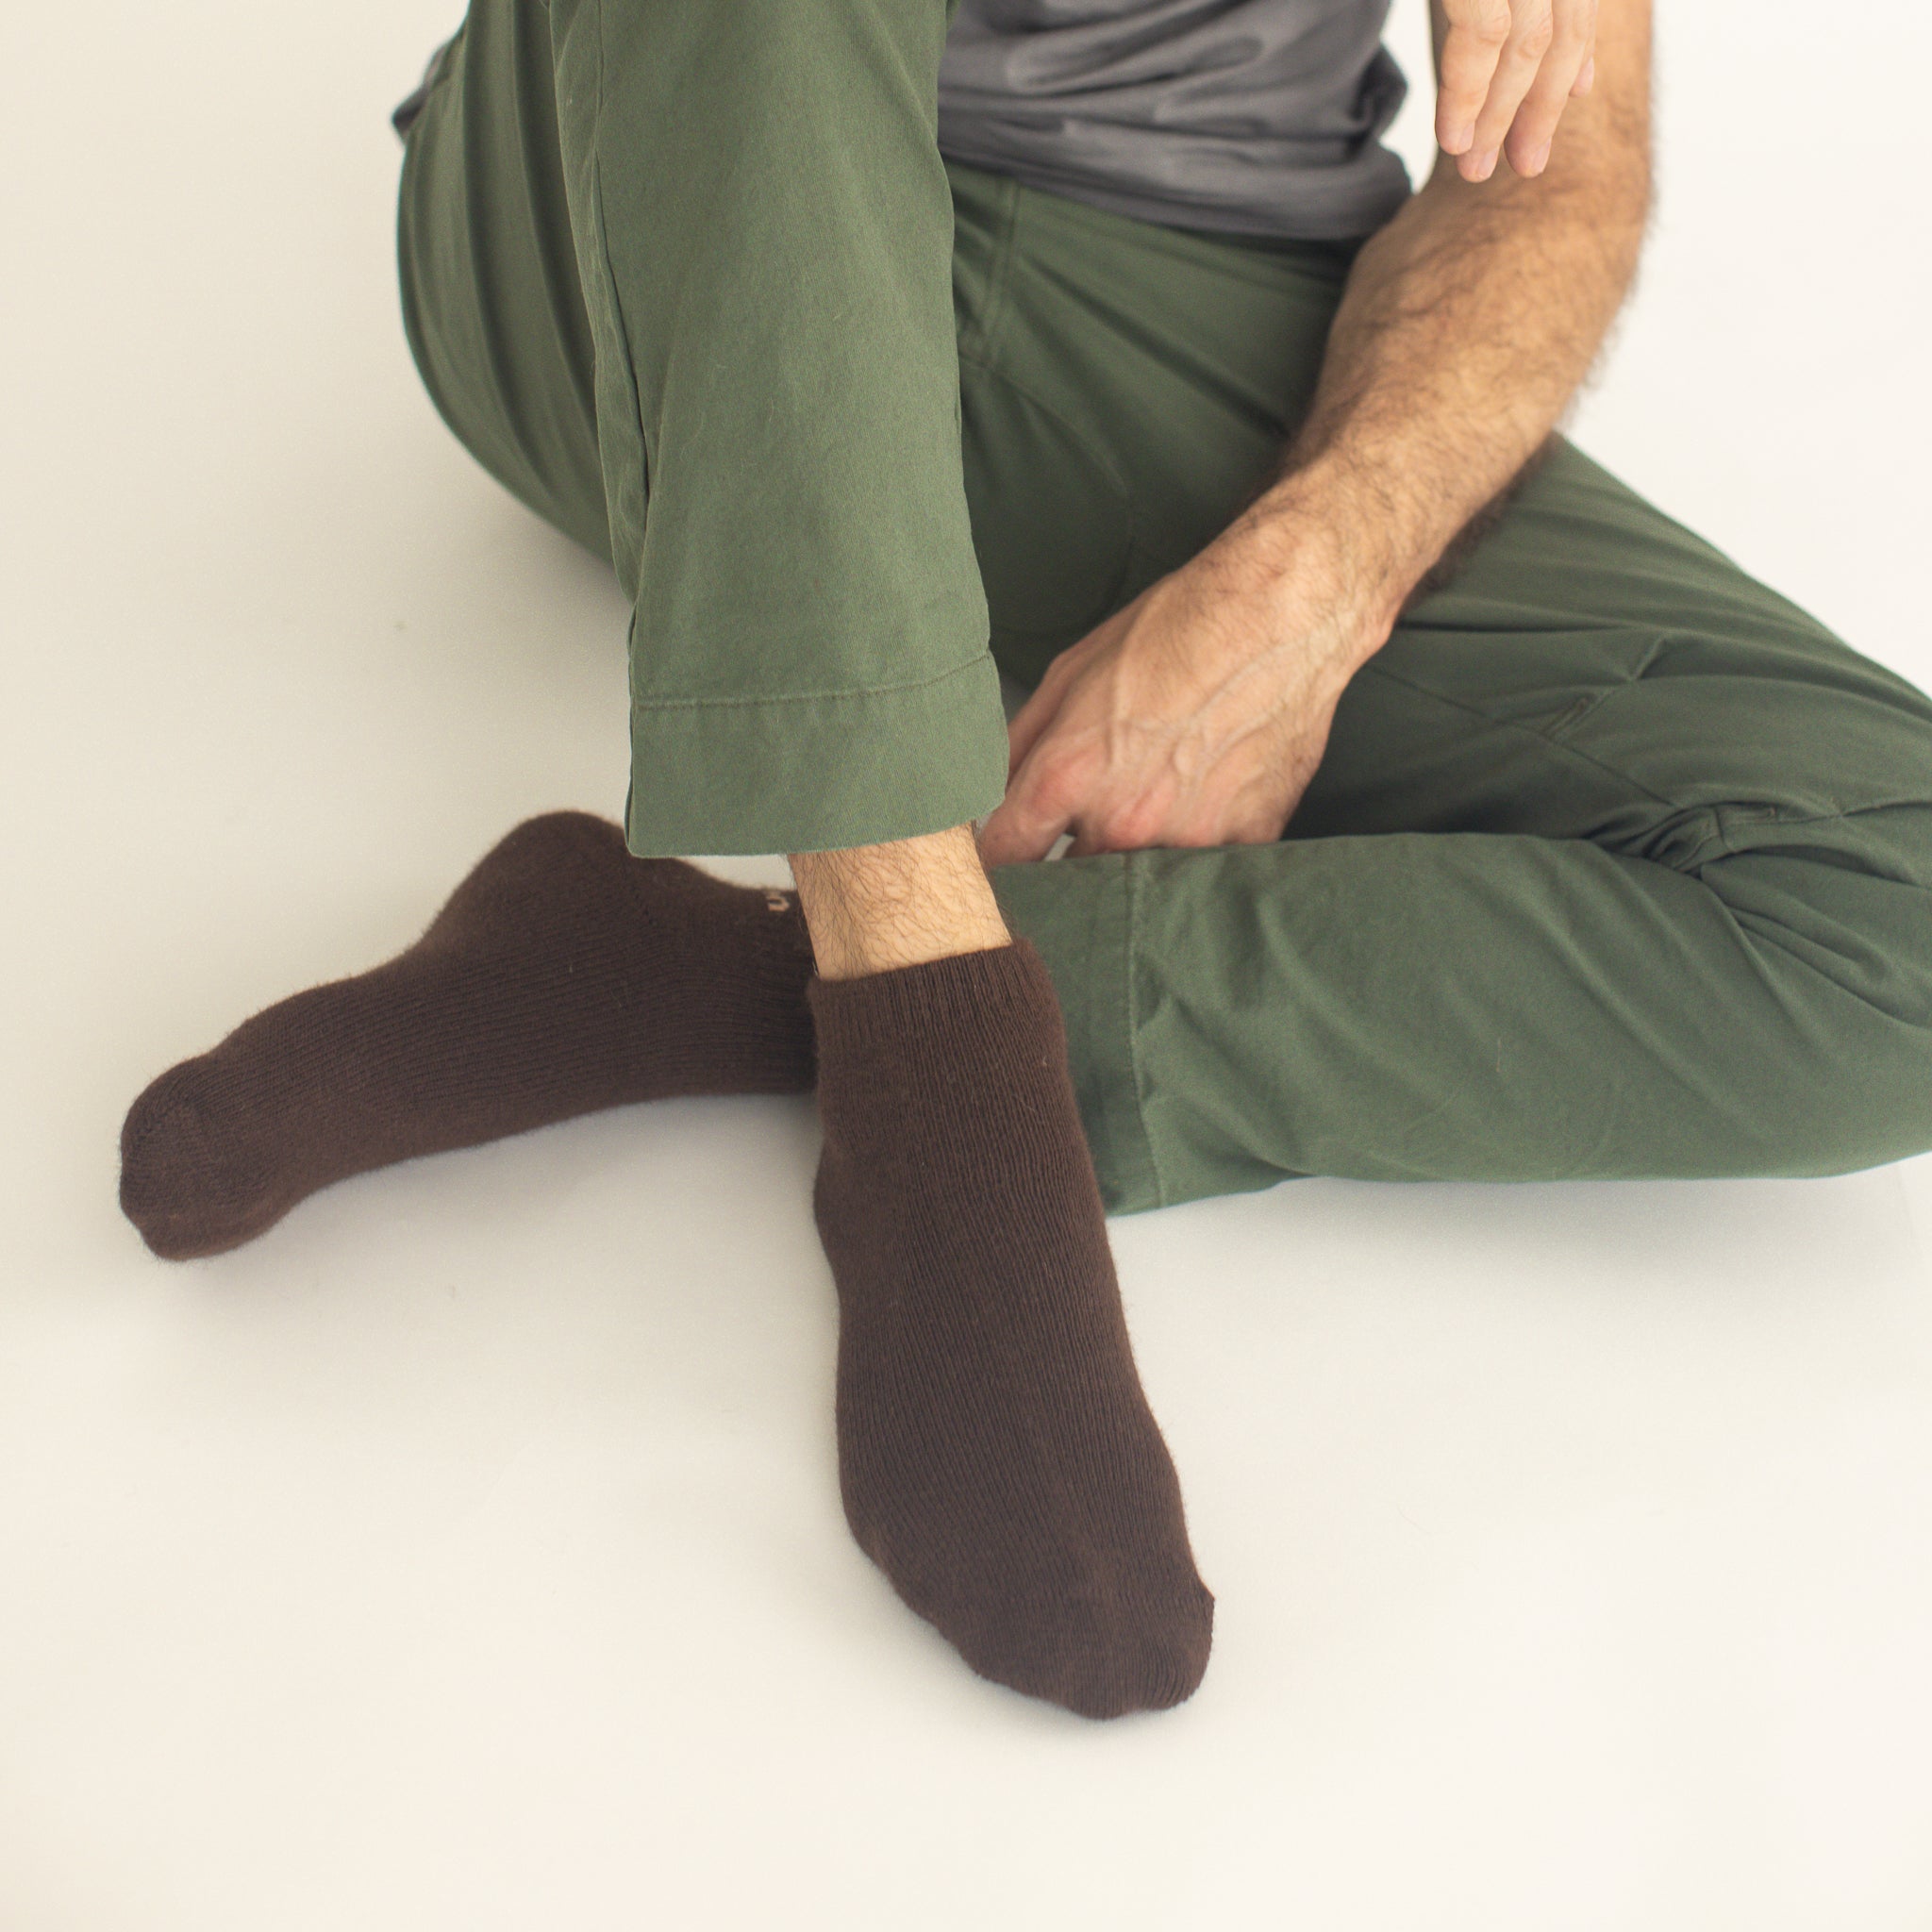 Possum Merino Wool NAPIER Socks, Chicory Coffee Men